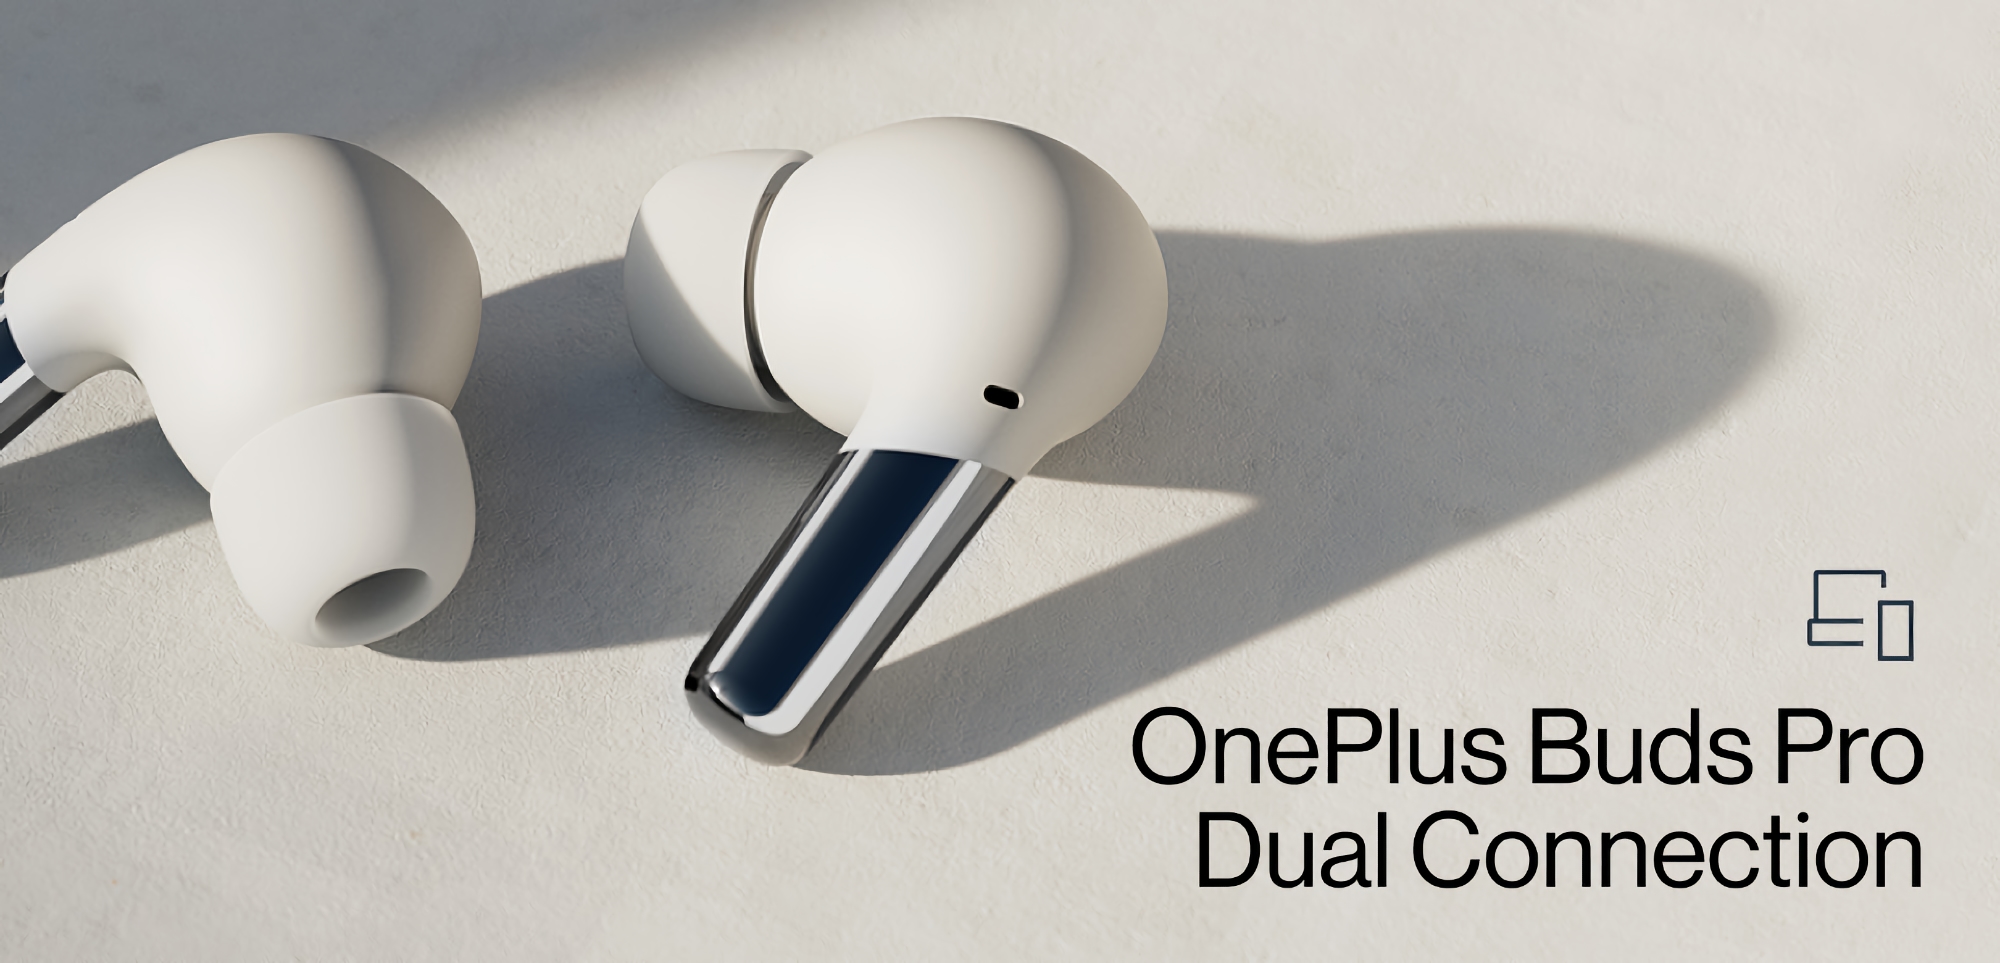 OnePlus Buds Pro с обновлением получили функцию Dual Connection: рассказываем что это такое и как работает